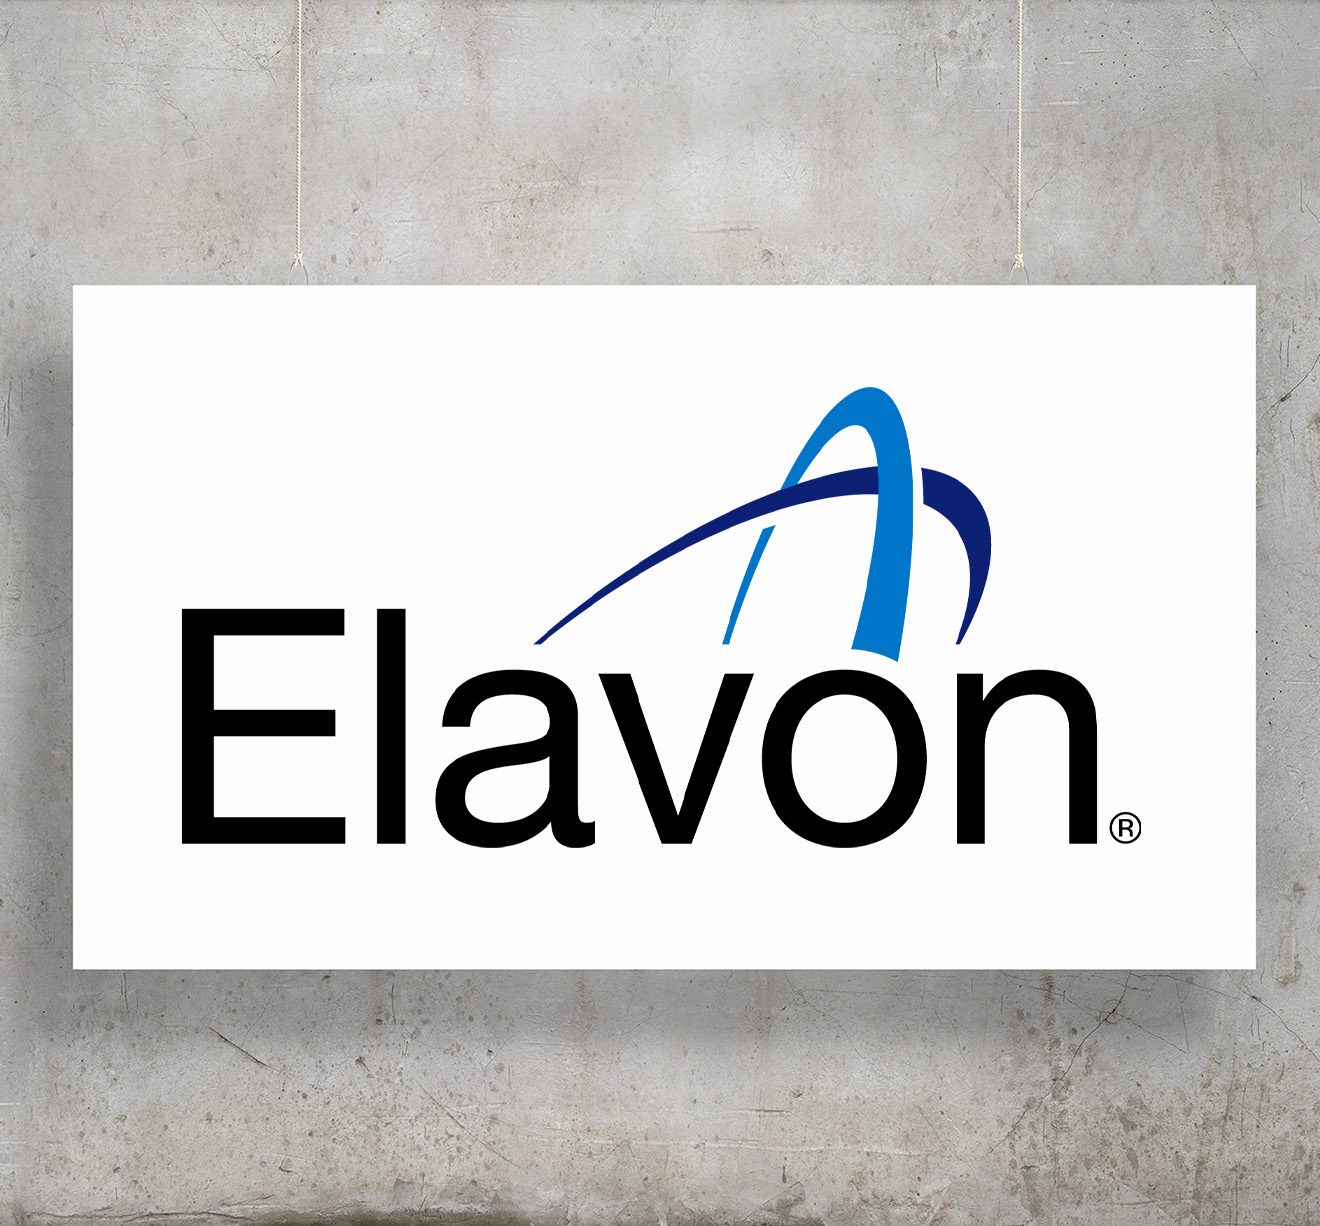 Elavon company profile